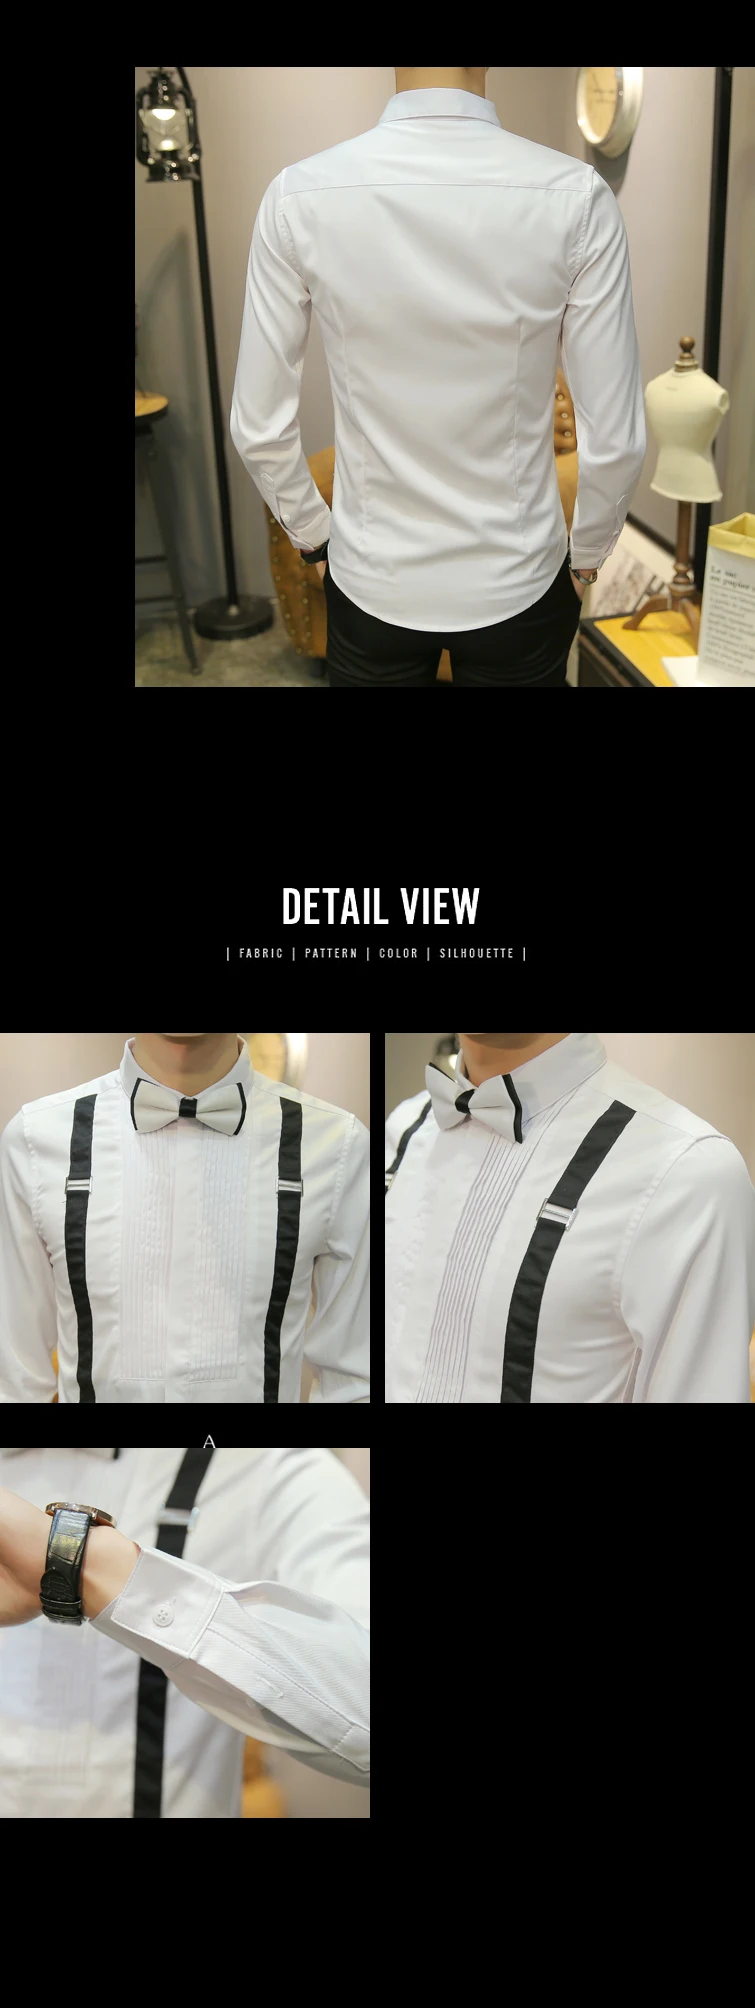 2018 Camisa Masculina Social Slim Fit рубашки в британском стиле мужские черные белые рубашки для ужина формальная рубашка-смокинг Клубные наряды